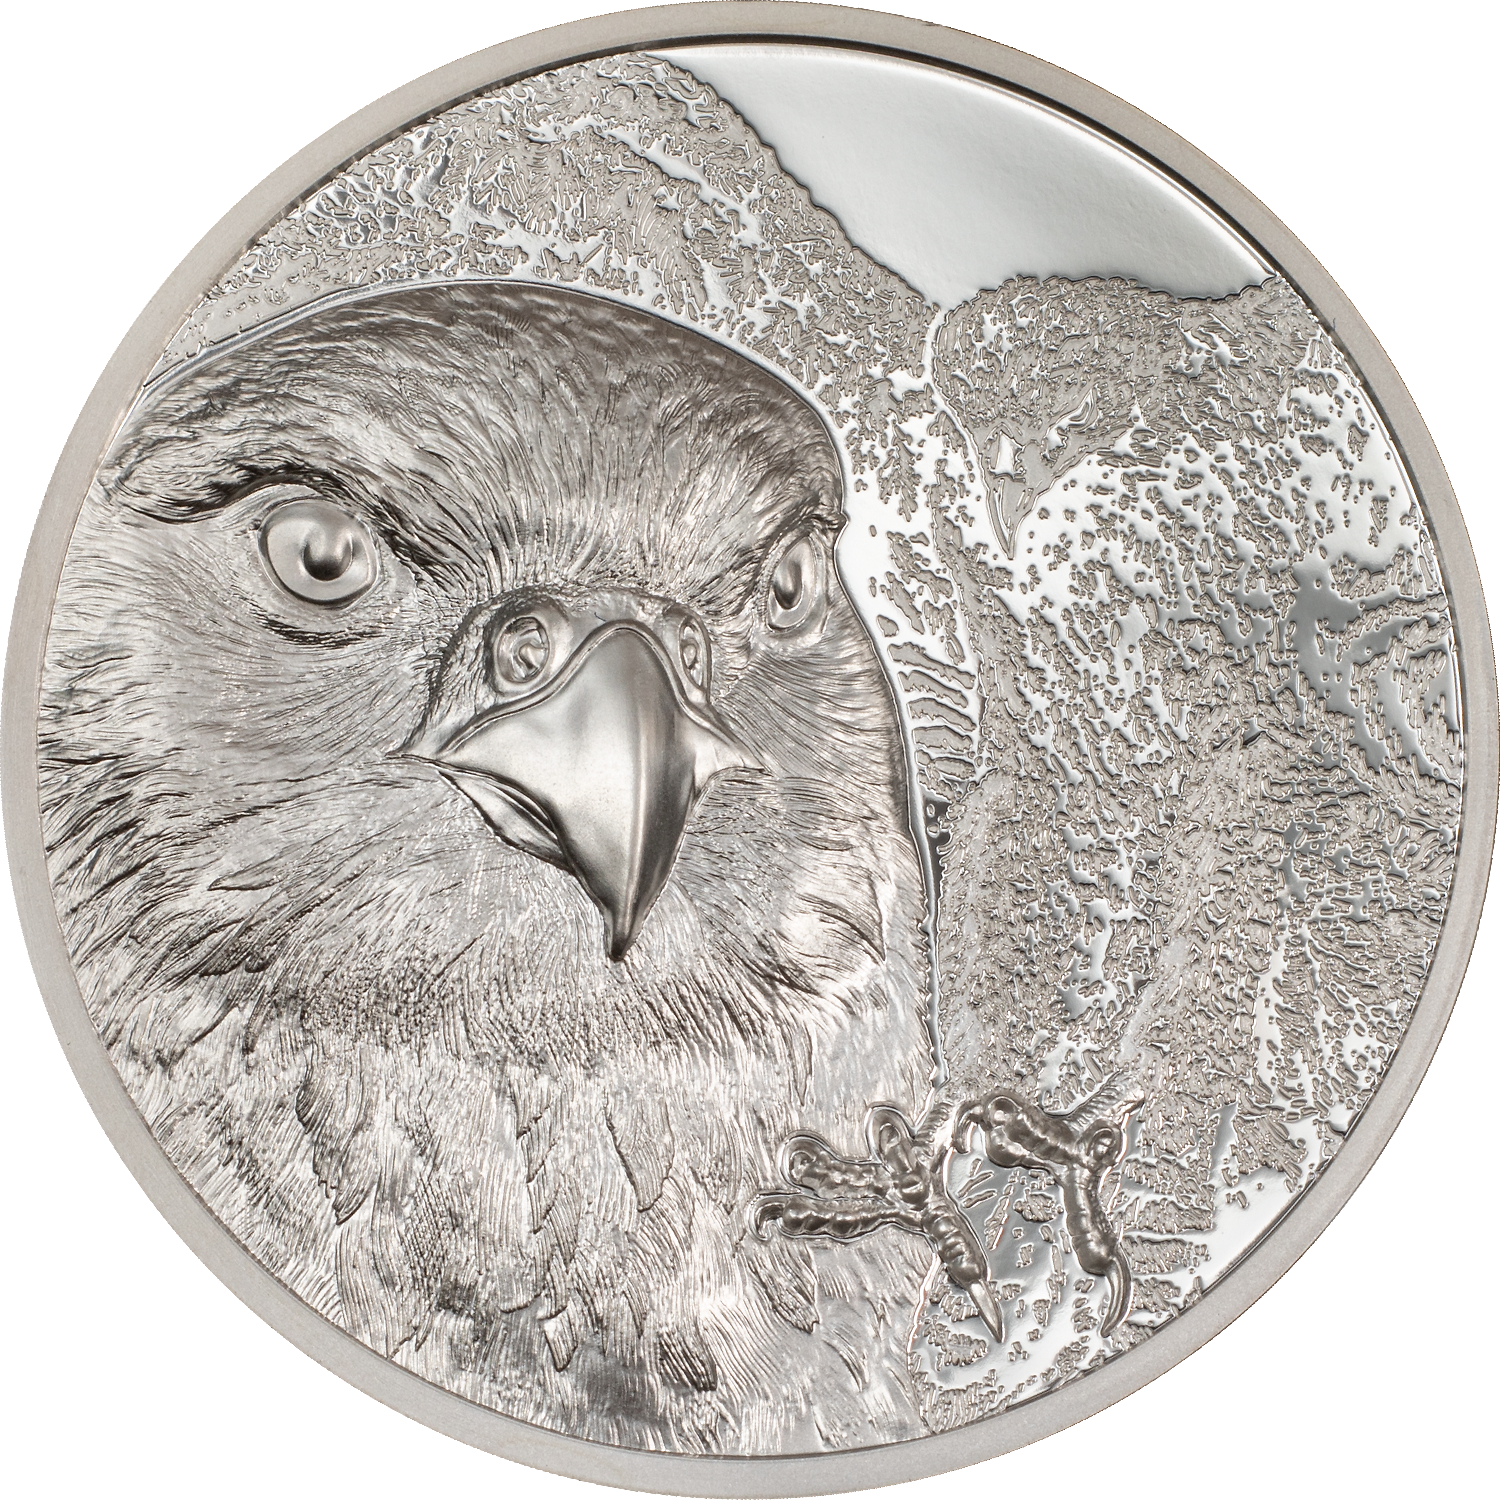 2023 Wild Mongolia Falcon 500T 1oz Silver Proof Coin